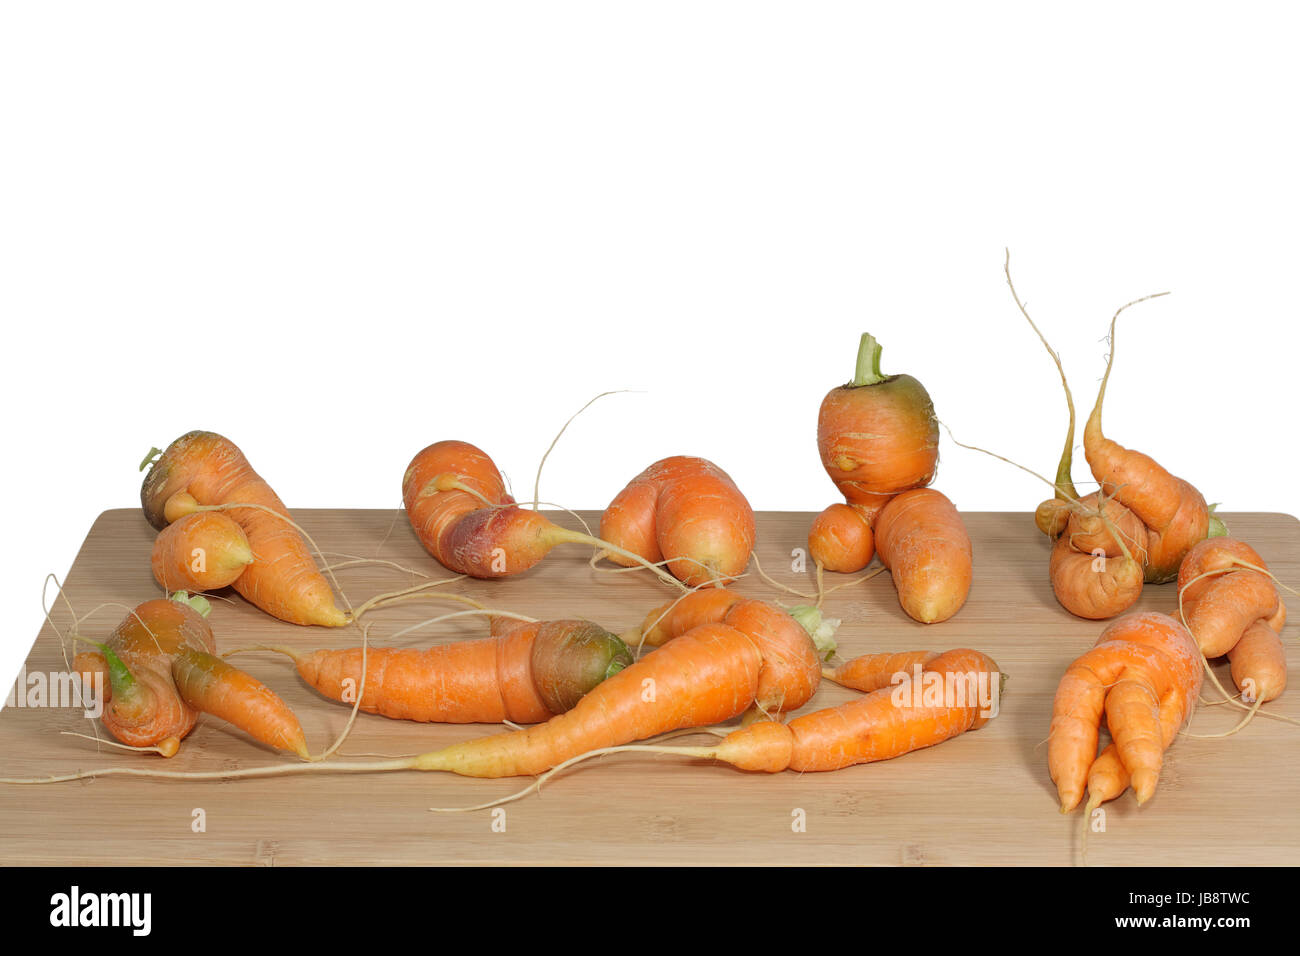 bulky organic carrots Stock Photo